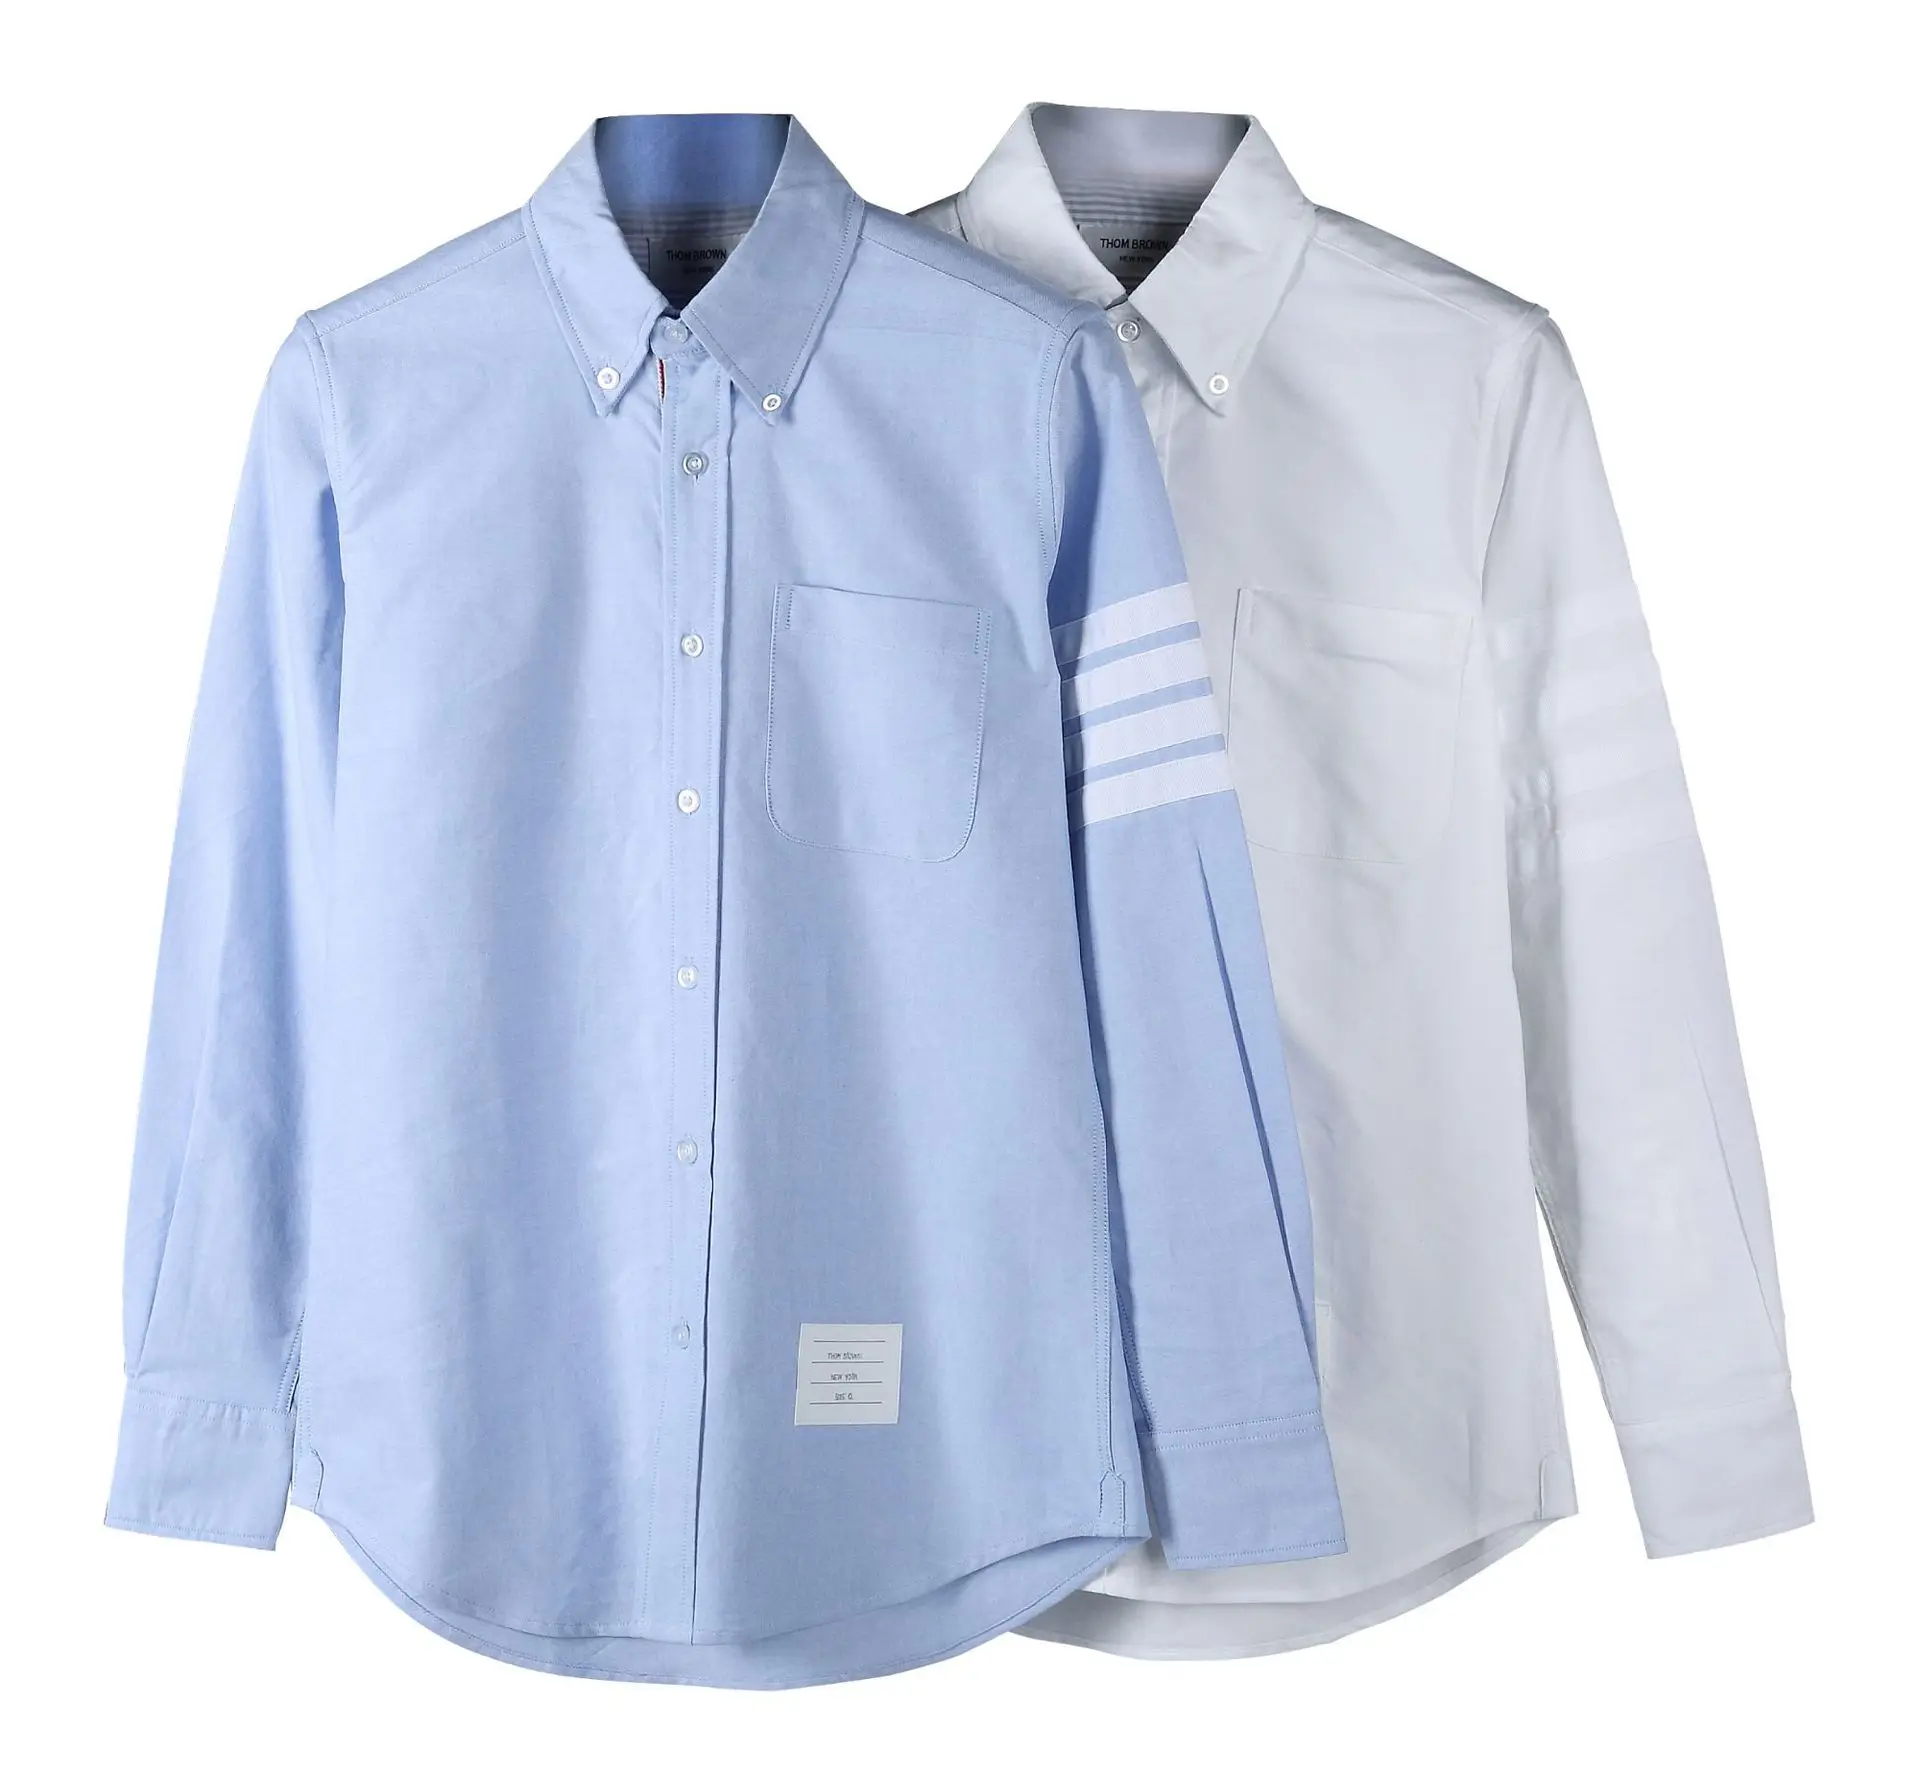 Gran oferta Camiseta de manga larga para hombre y mujer, blusa informal de color liso Oxford con cuello vuelto, diseño coreano, 2021 TB THOM AjXNeOb85a5